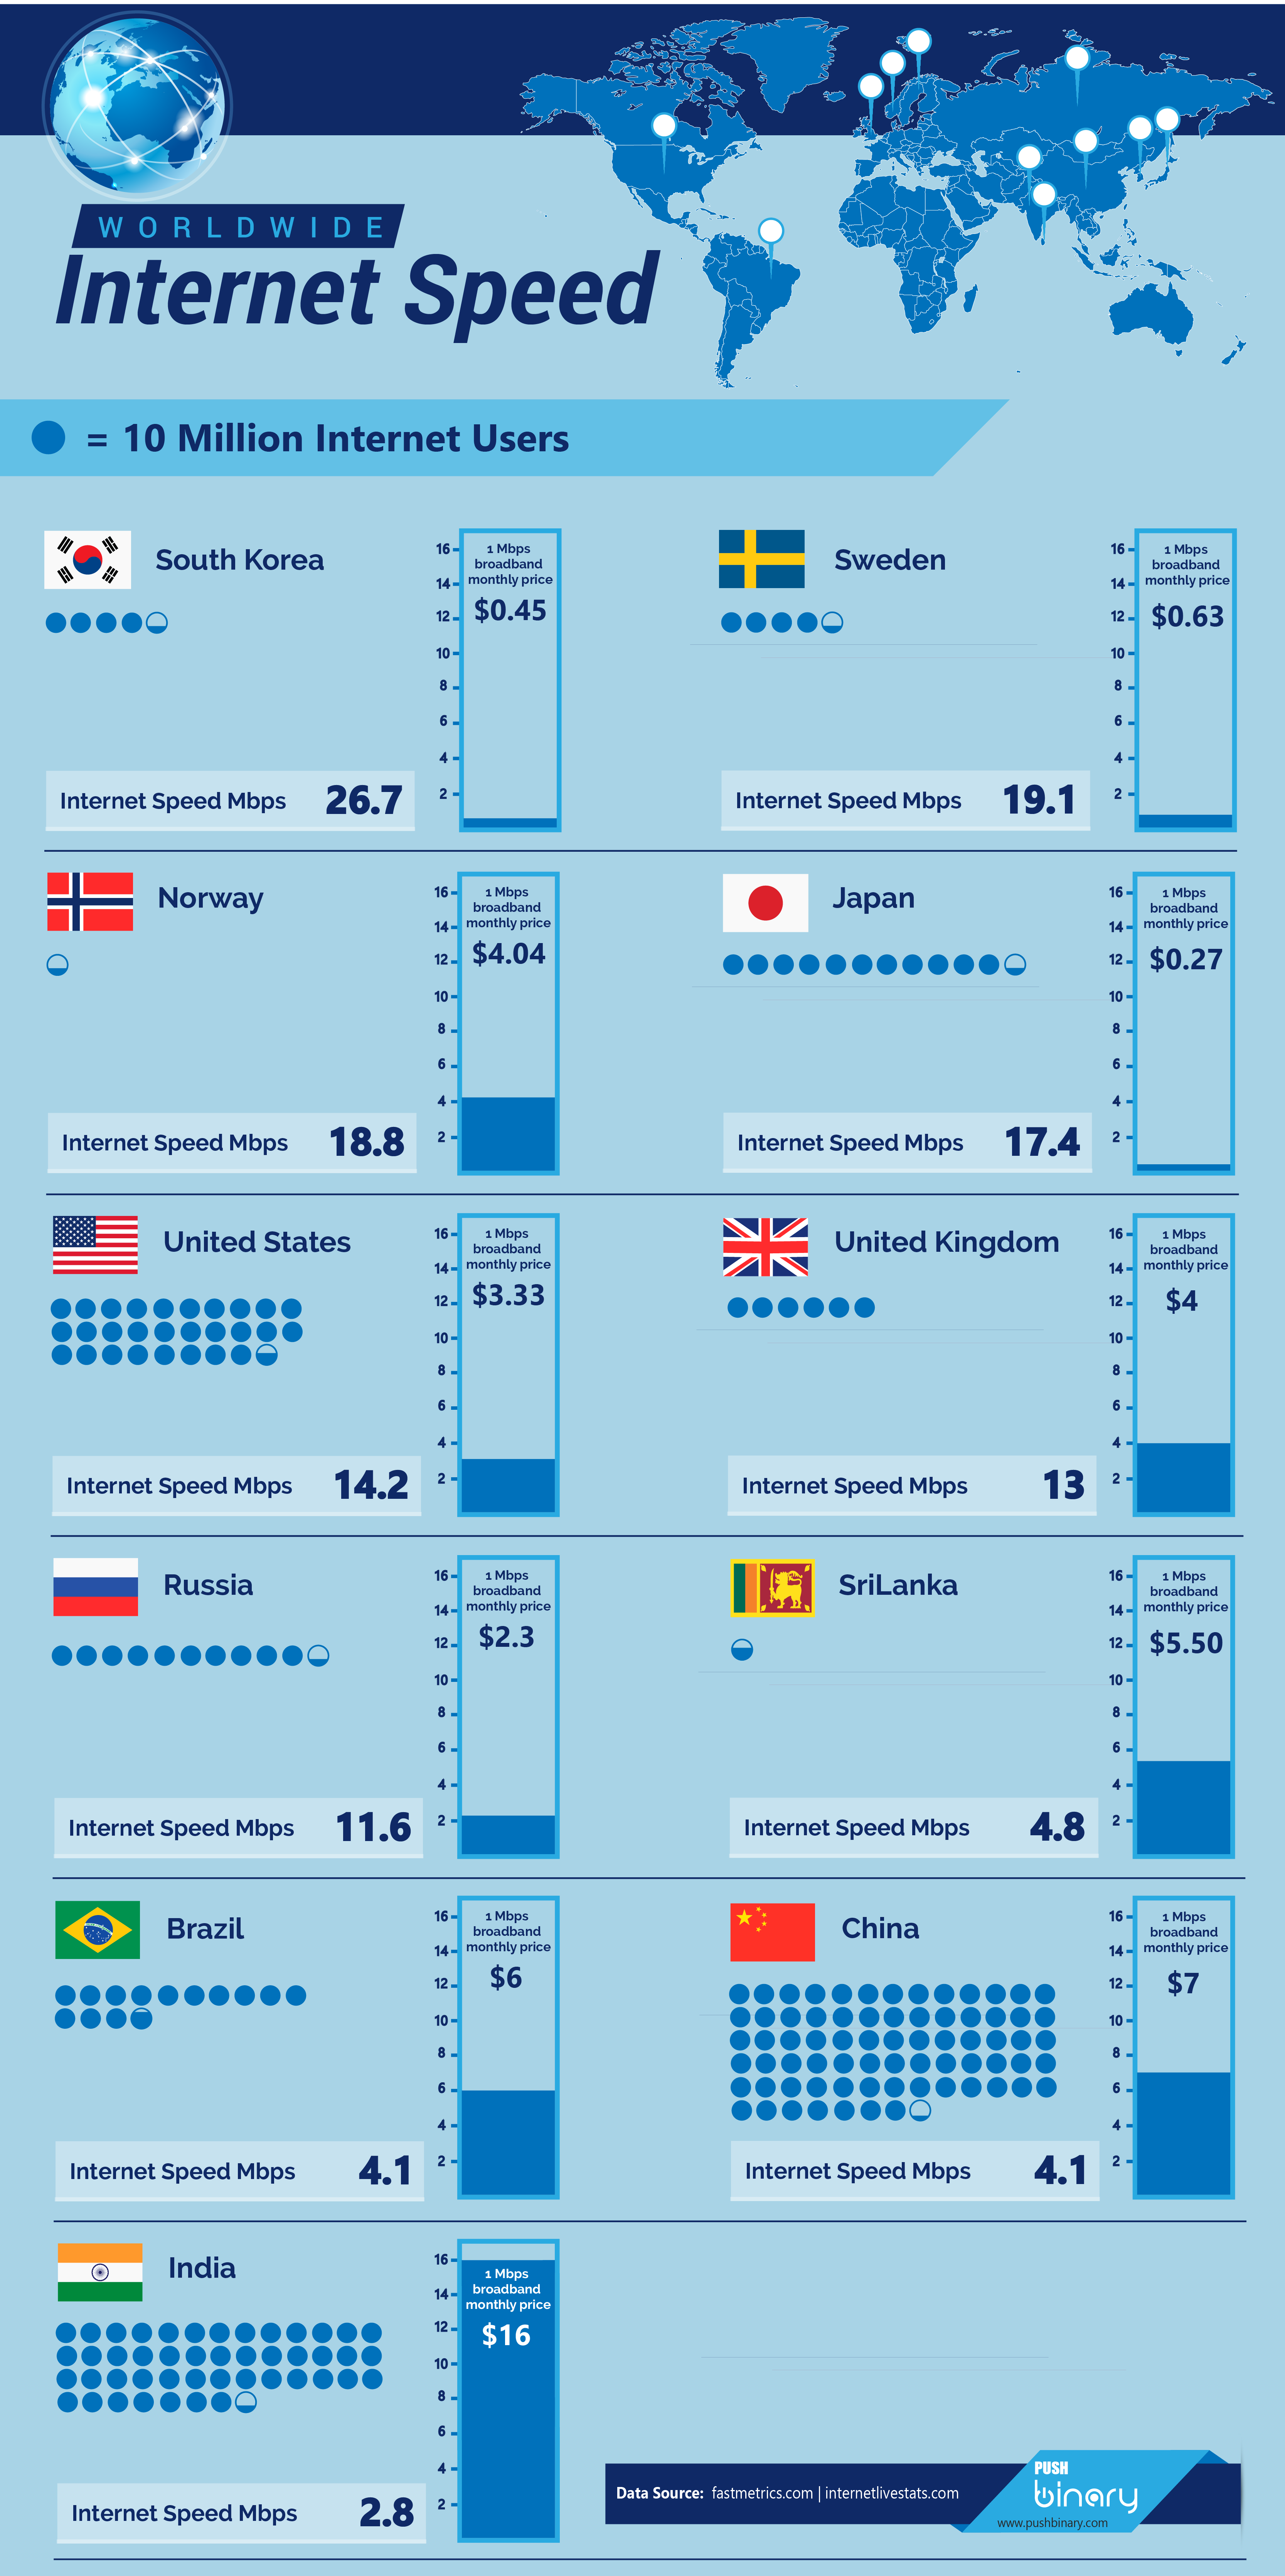 Worldwide Internet Speed Infographic